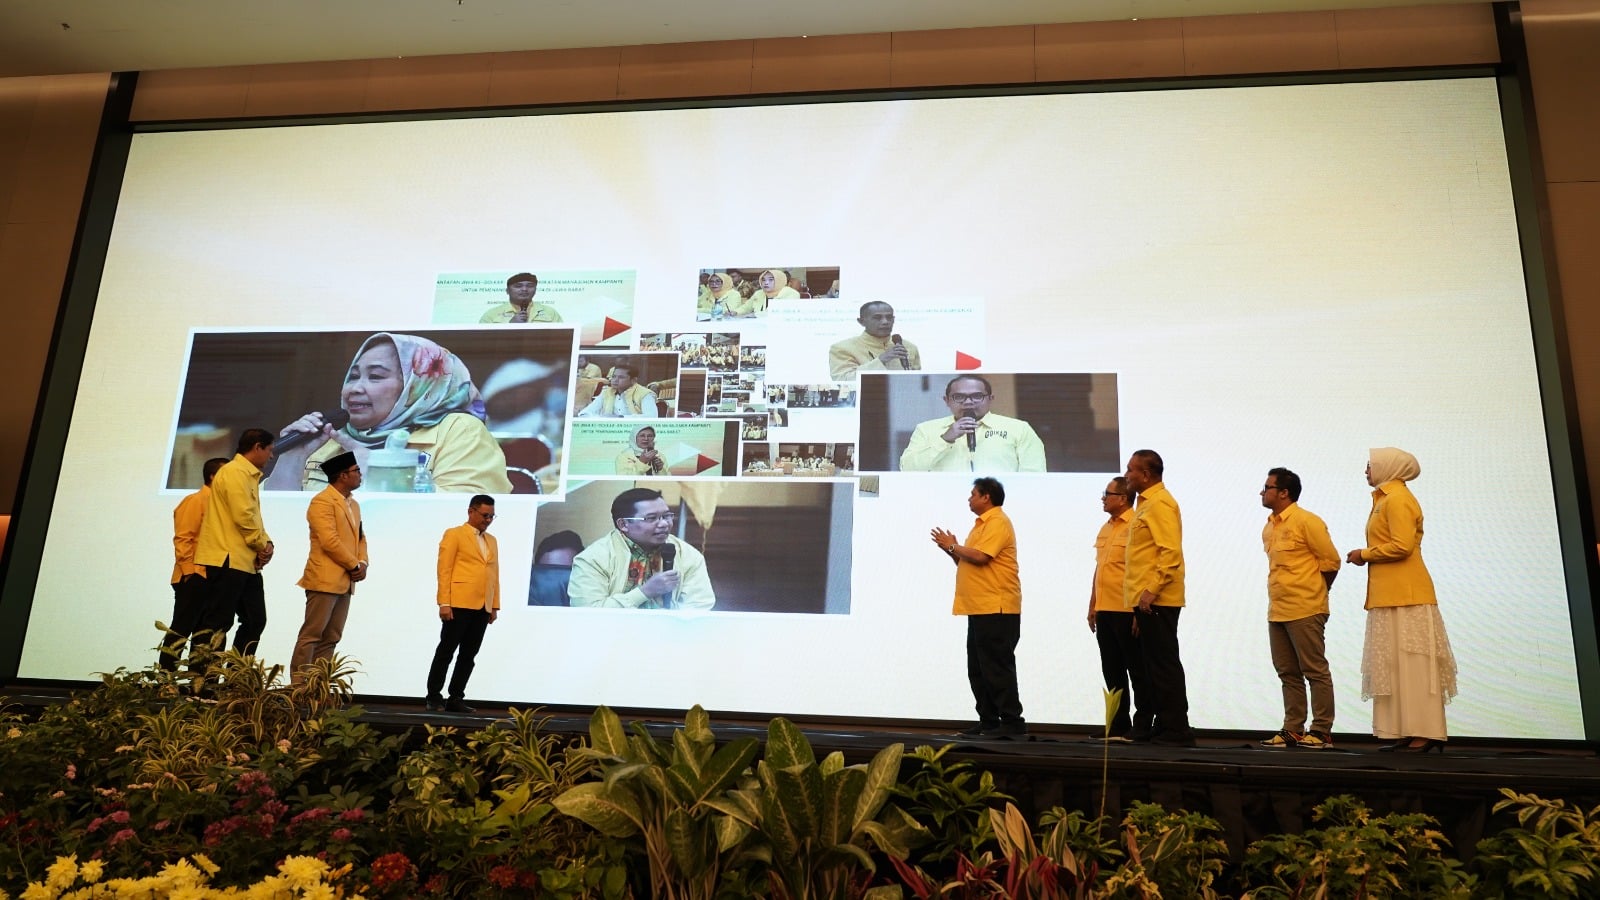 Ketua Umum Partai Golkar Airlangga Hartarto bersama beberapa orang menyaksikan layar yang berisi tokoh-tokoh partai golkar jawa barat 